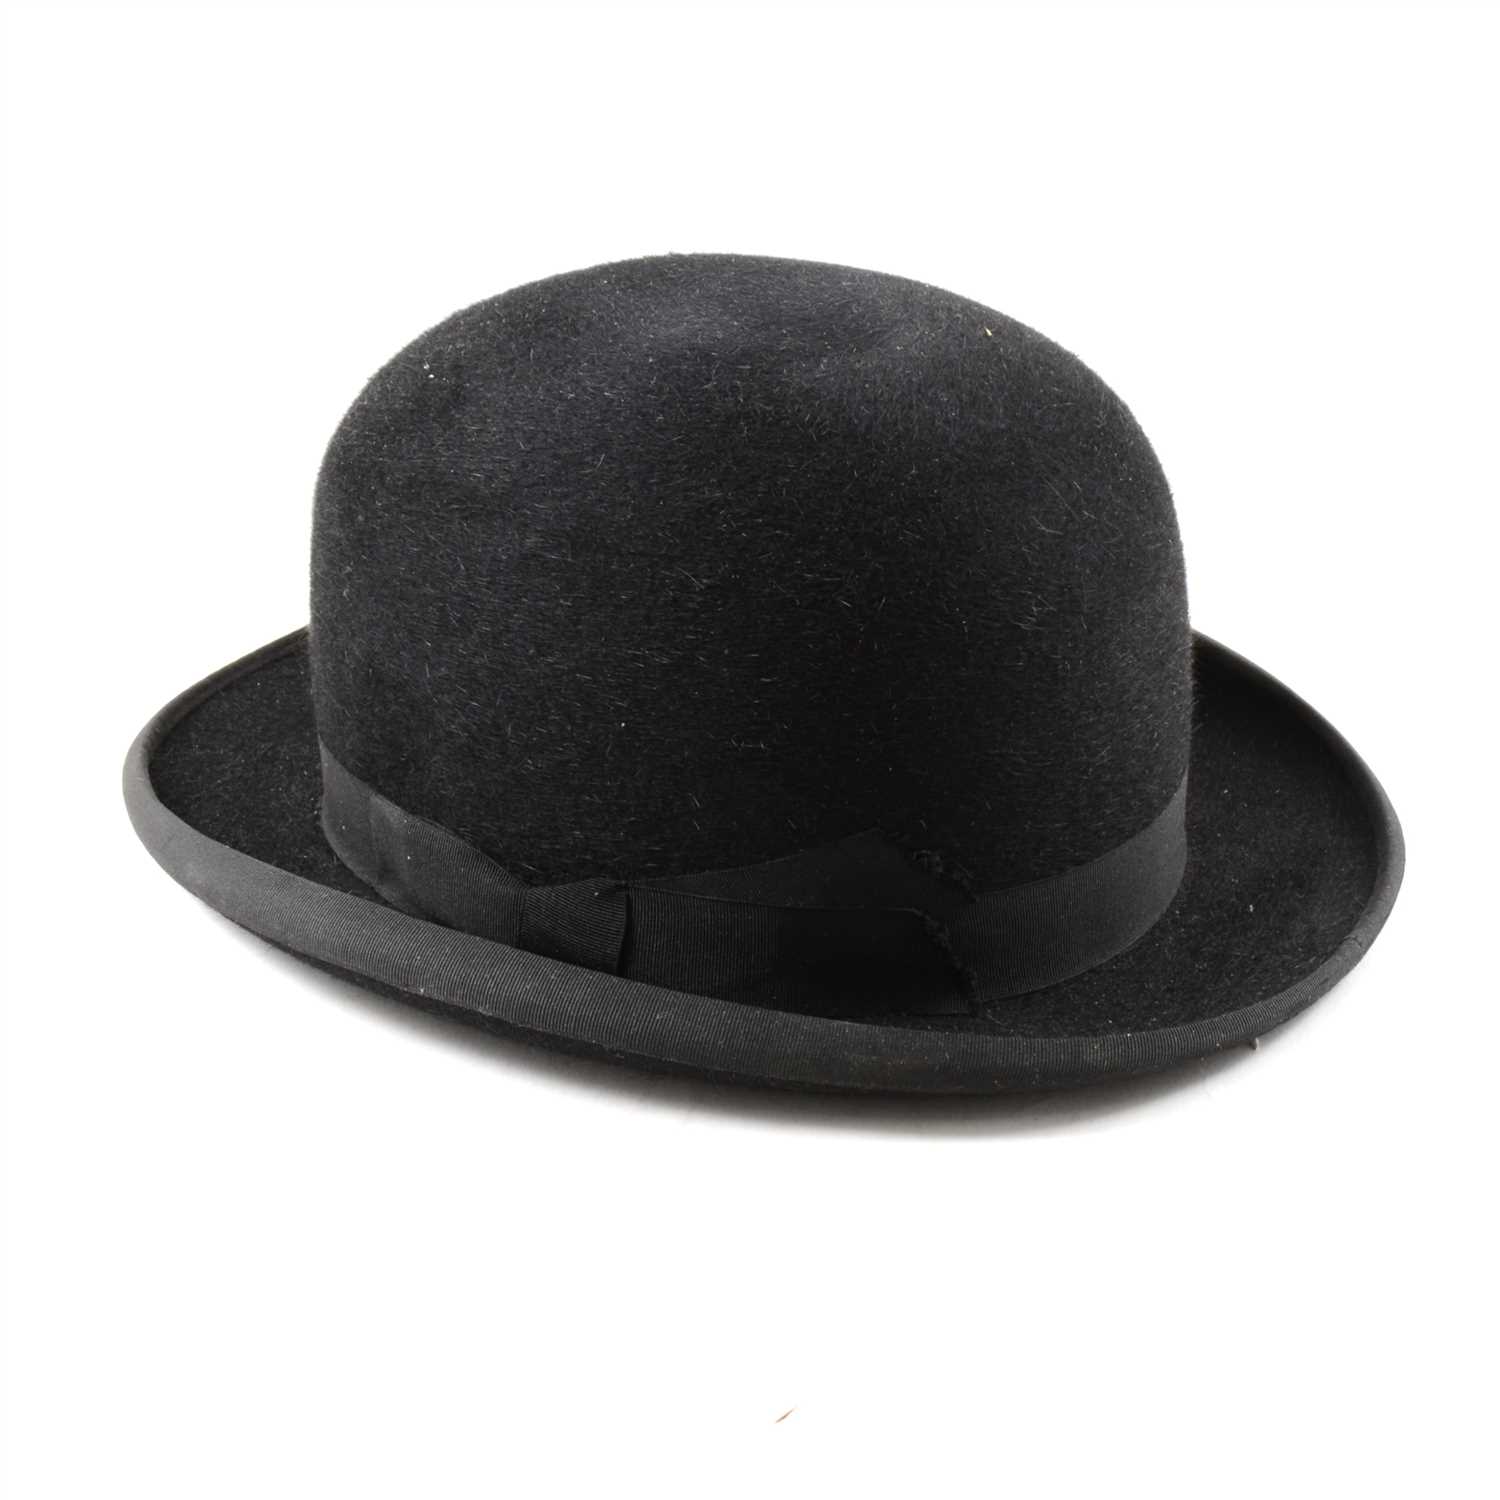 Lot 173 - Vintage black bowler hat, 6-7/8